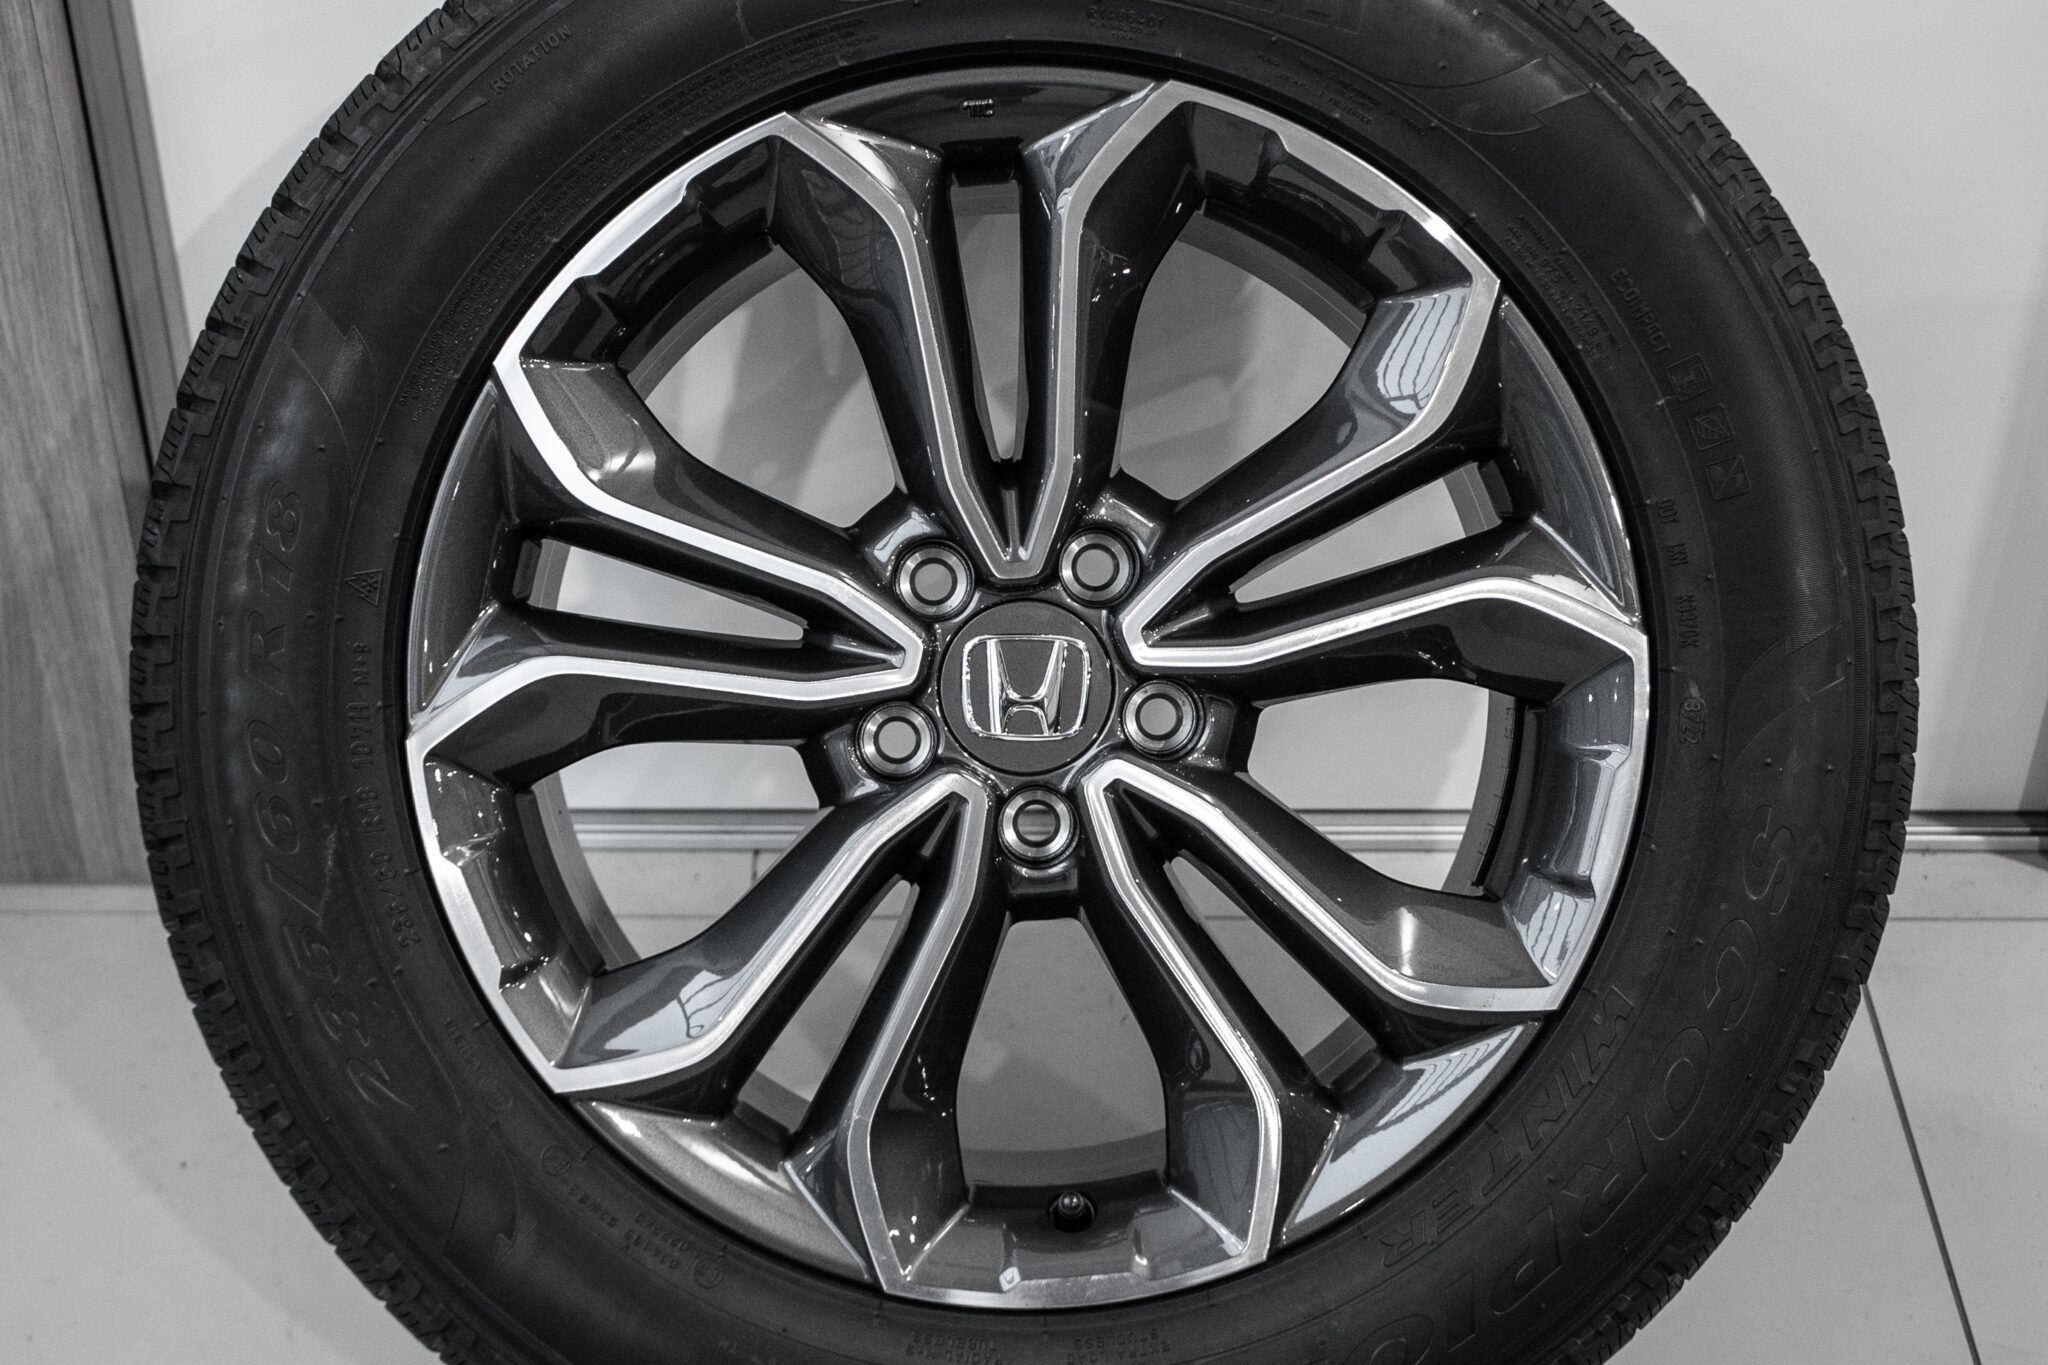 18" Winterwielen voor de Honda CR-V vanaf 18
€1.750,-
Nieuwe set!